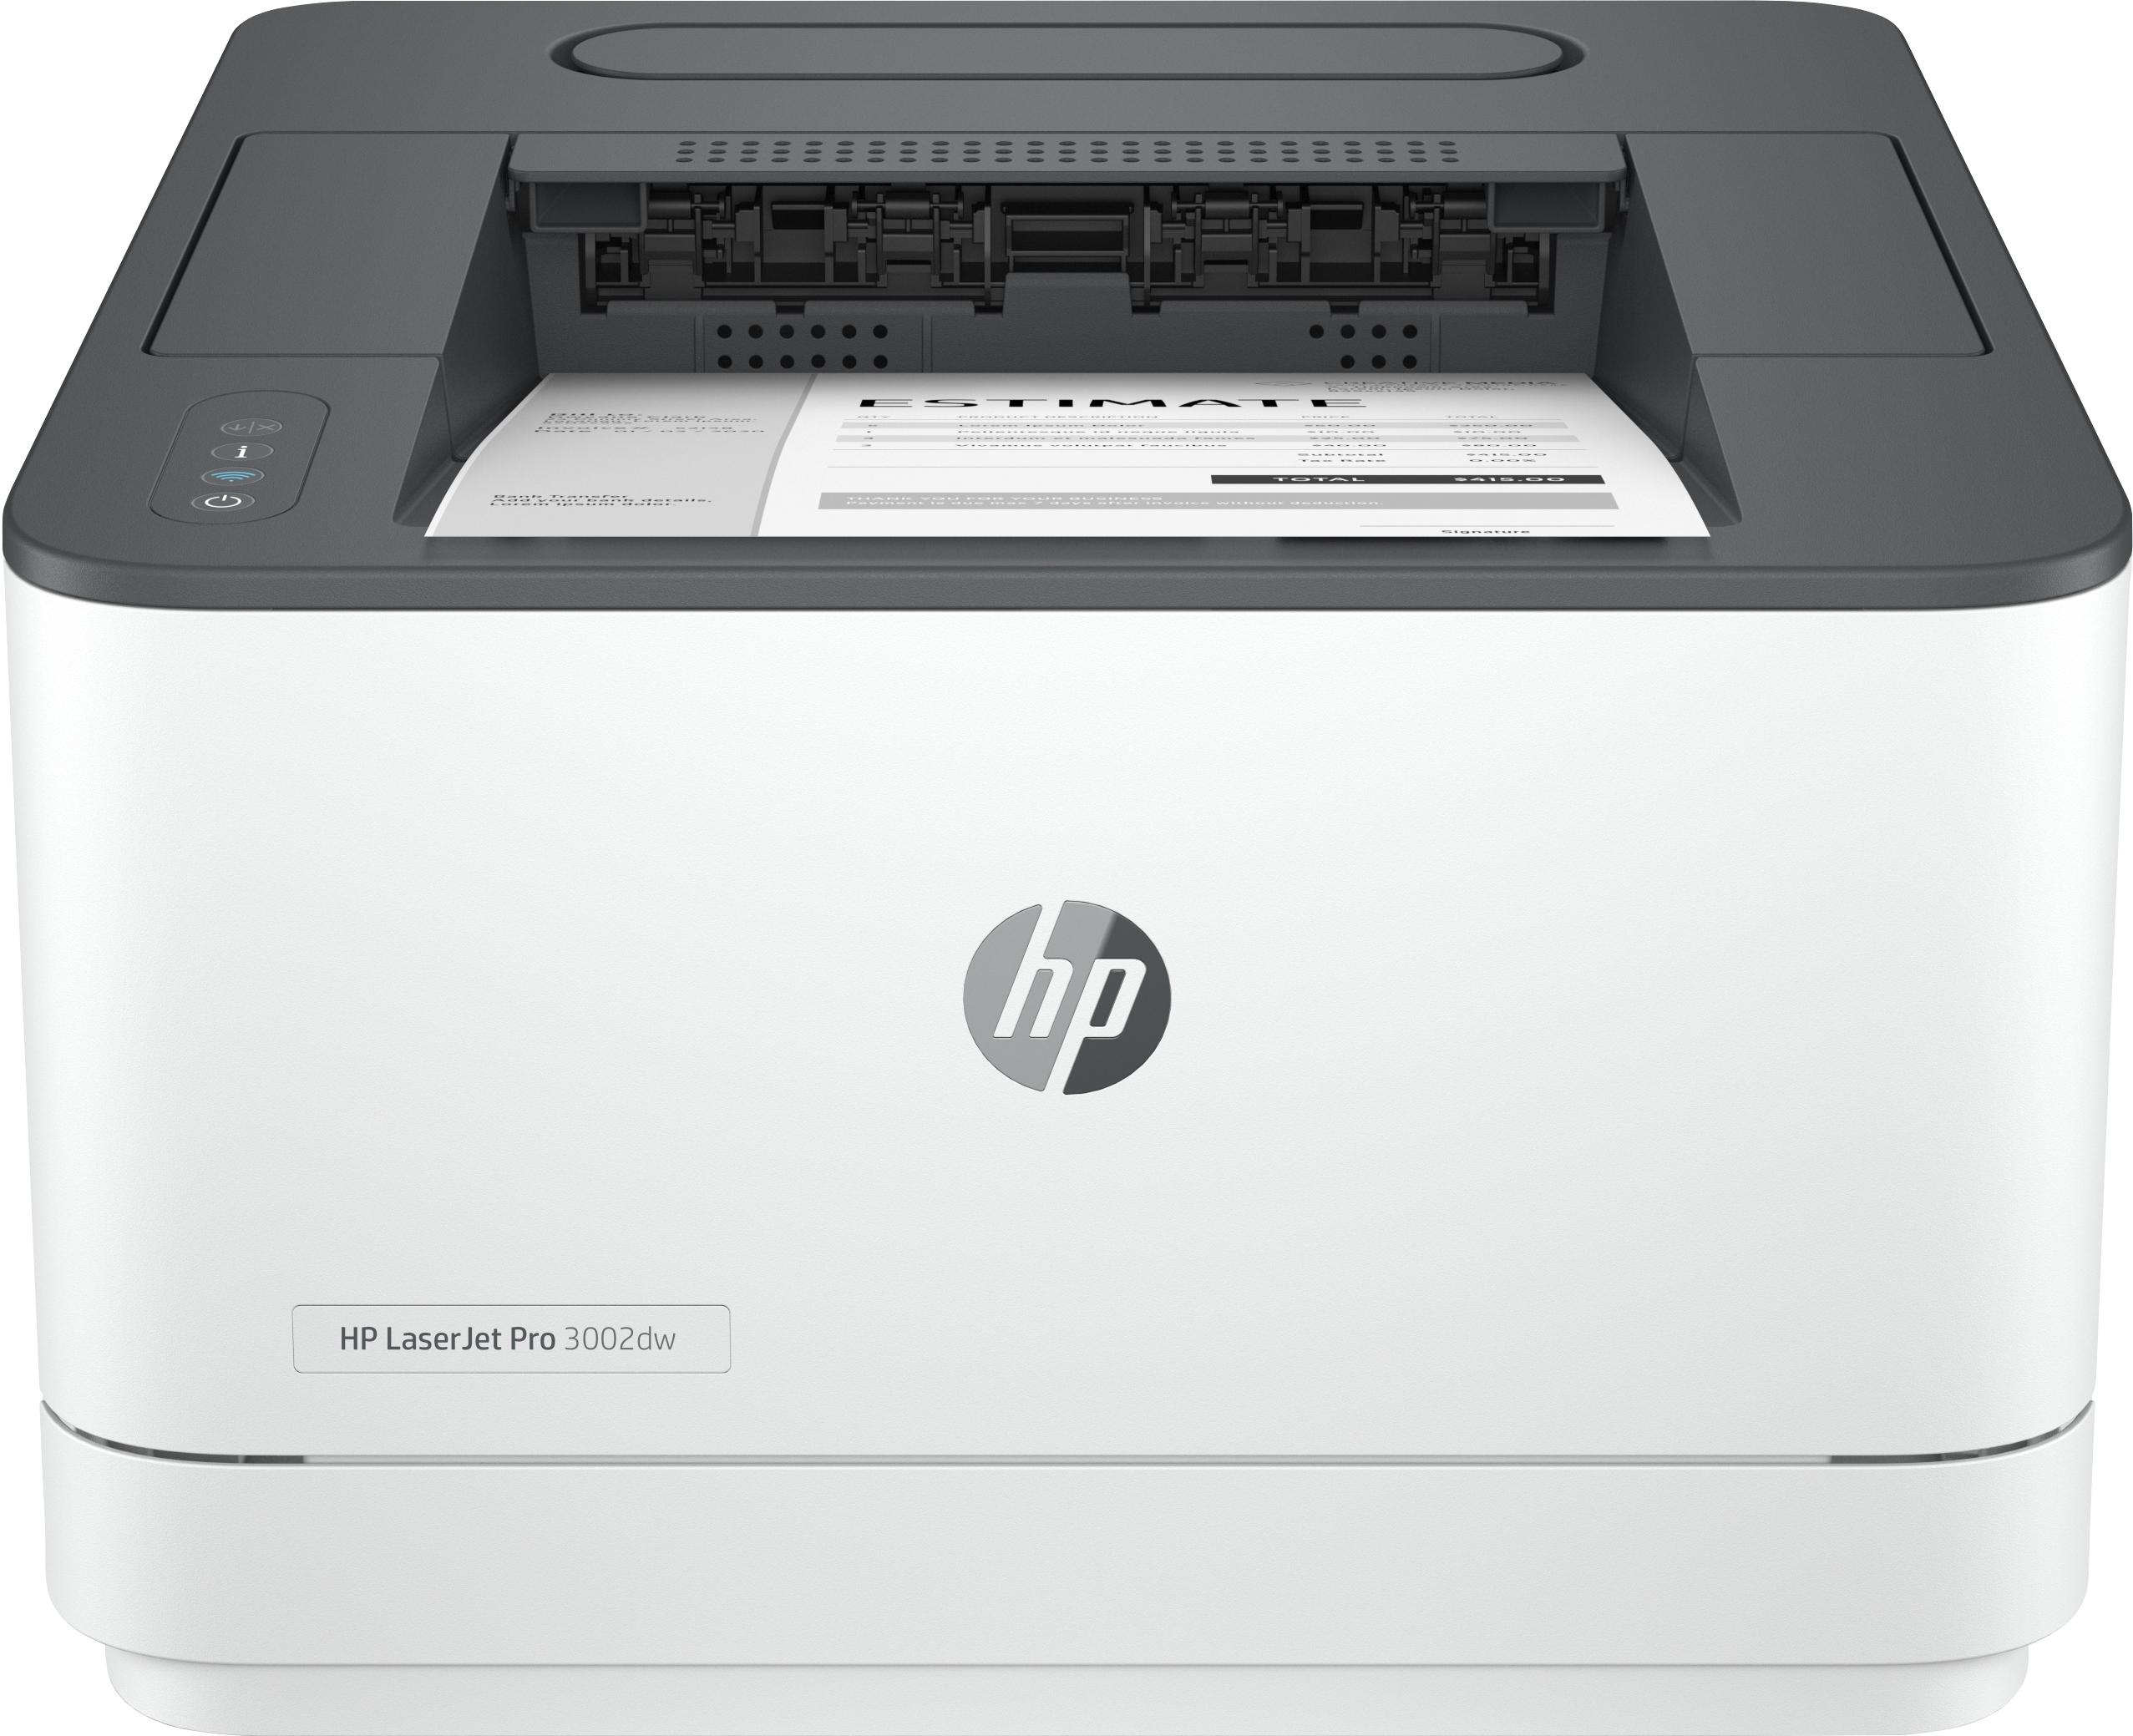 keten nieuws eetlust HP HP LaserJet Pro 3002dw printer, Zwart-wit, Printer voor Kleine en  middelgrote ondernemingen, Print, Dual-band Wi-Fi; Optimale beveiliging;  Energiezuinig; Eerste pagina snel gereed; Dubbelzijdig printen; Roam  (3G652F#B19) kopen » Centralpoint